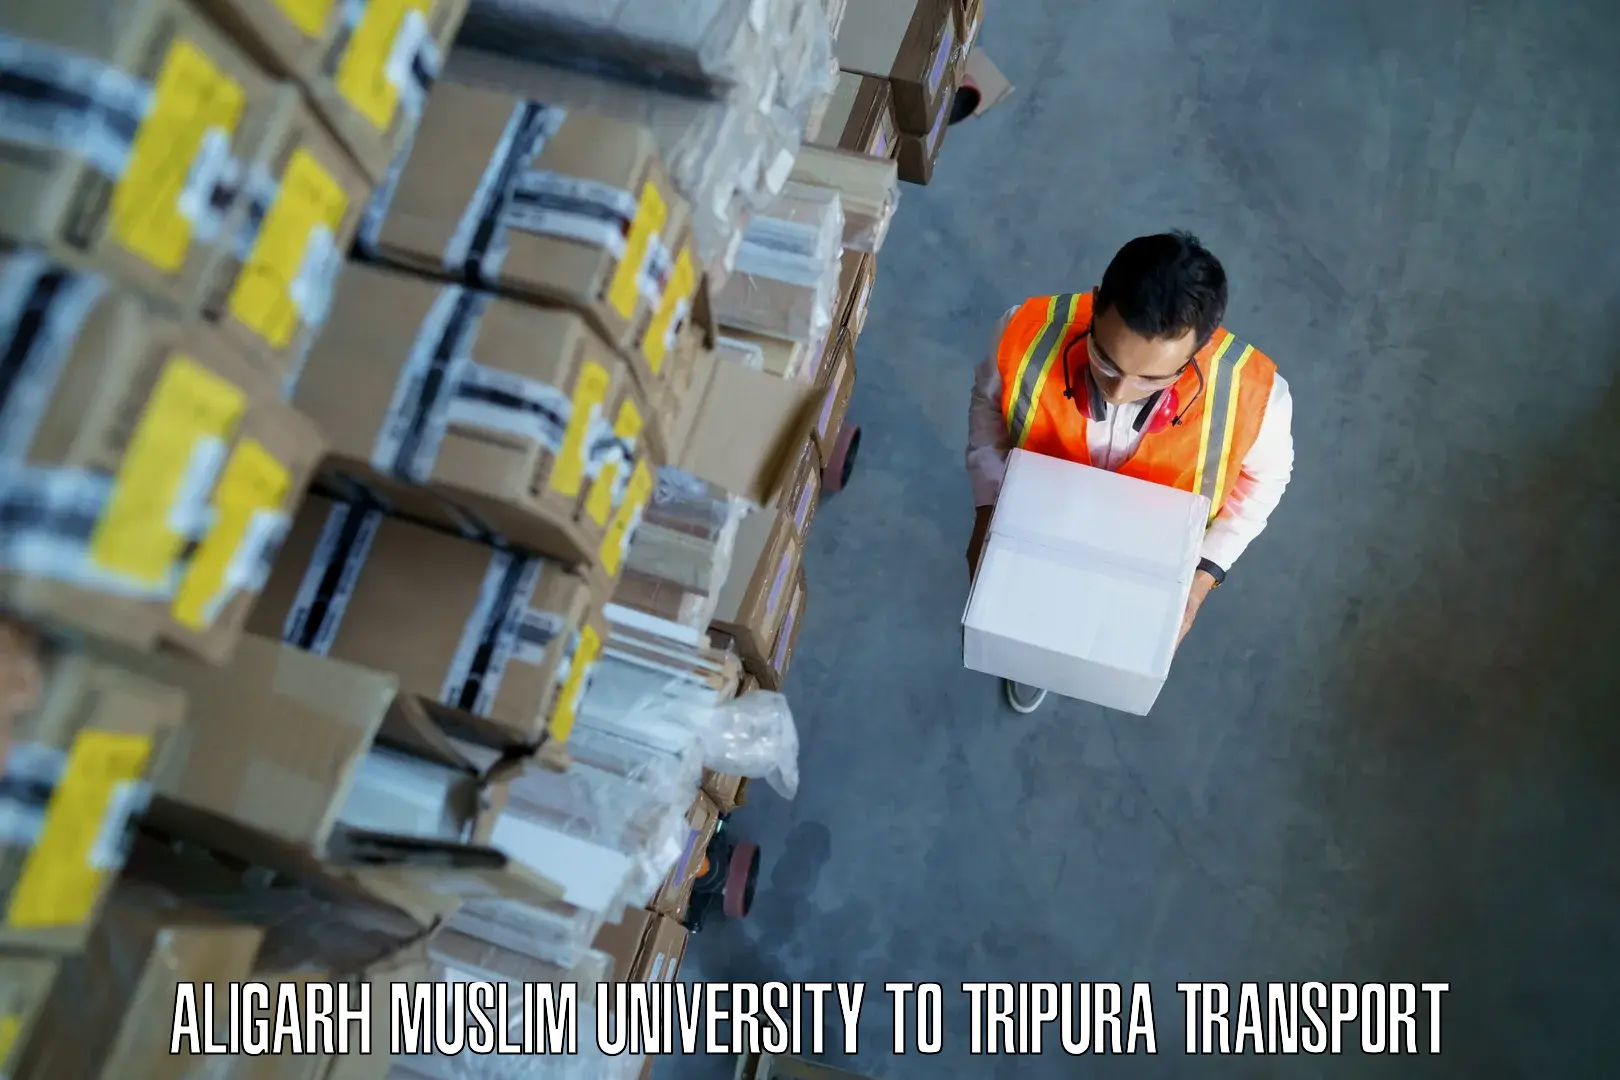 Transportation services Aligarh Muslim University to Santirbazar